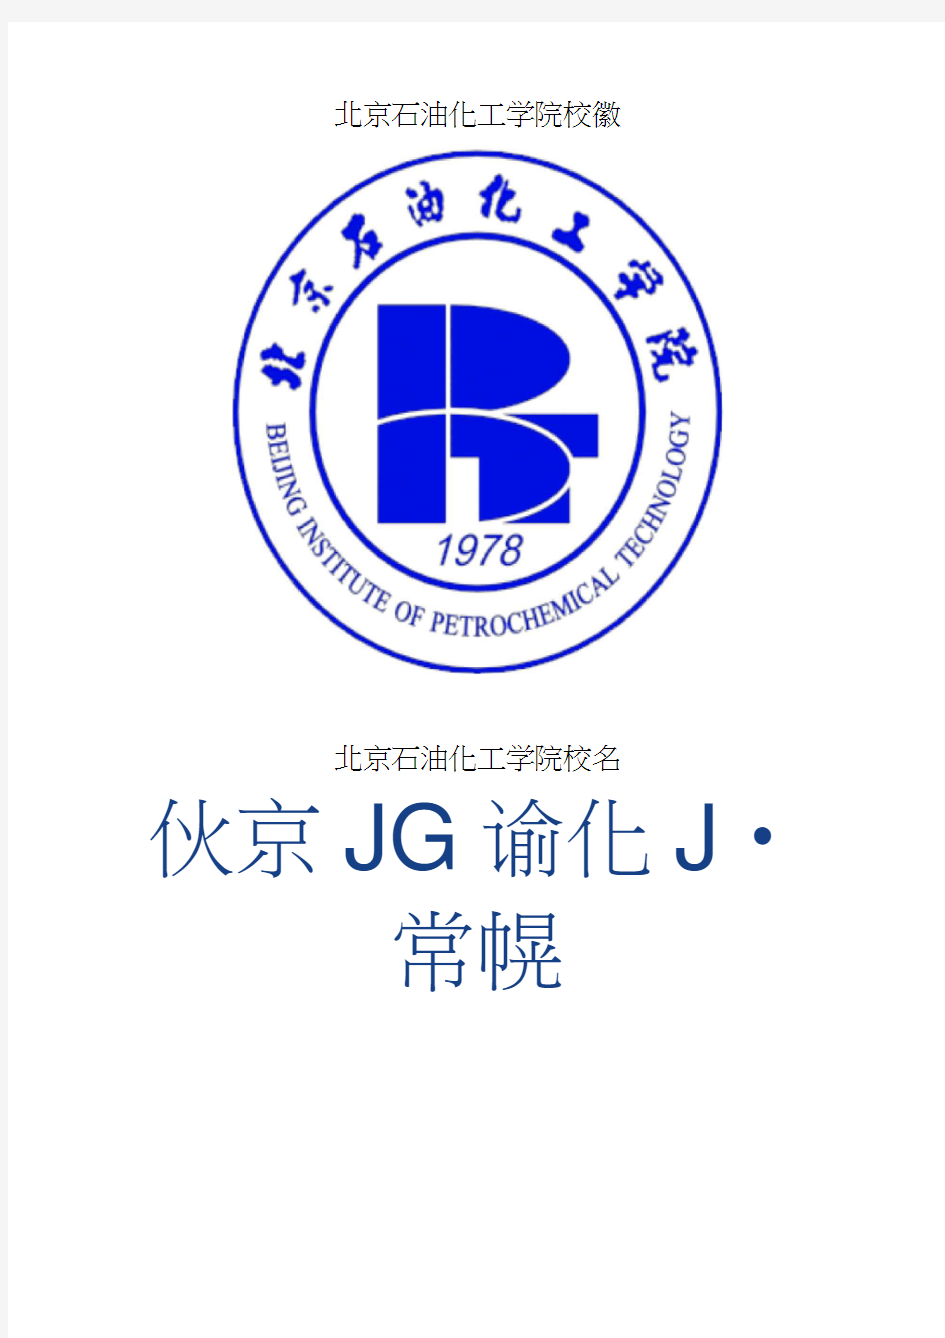 北京石油化工学院校徽校标